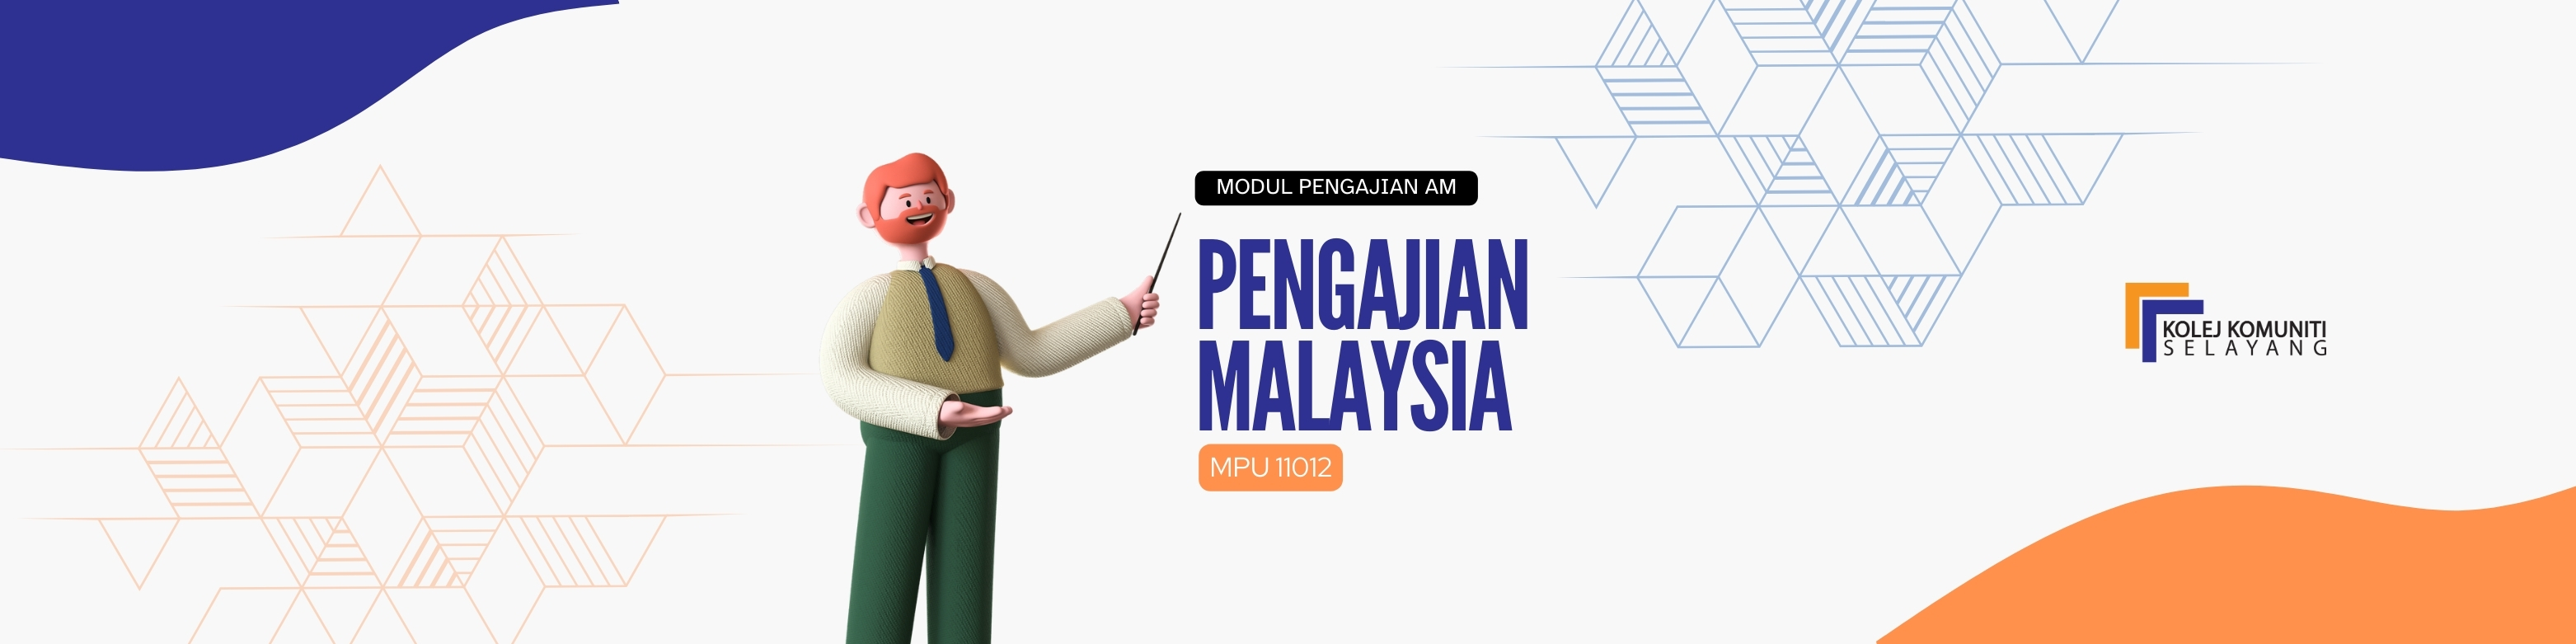 MPU11012 - PENGAJIAN MALAYSIA